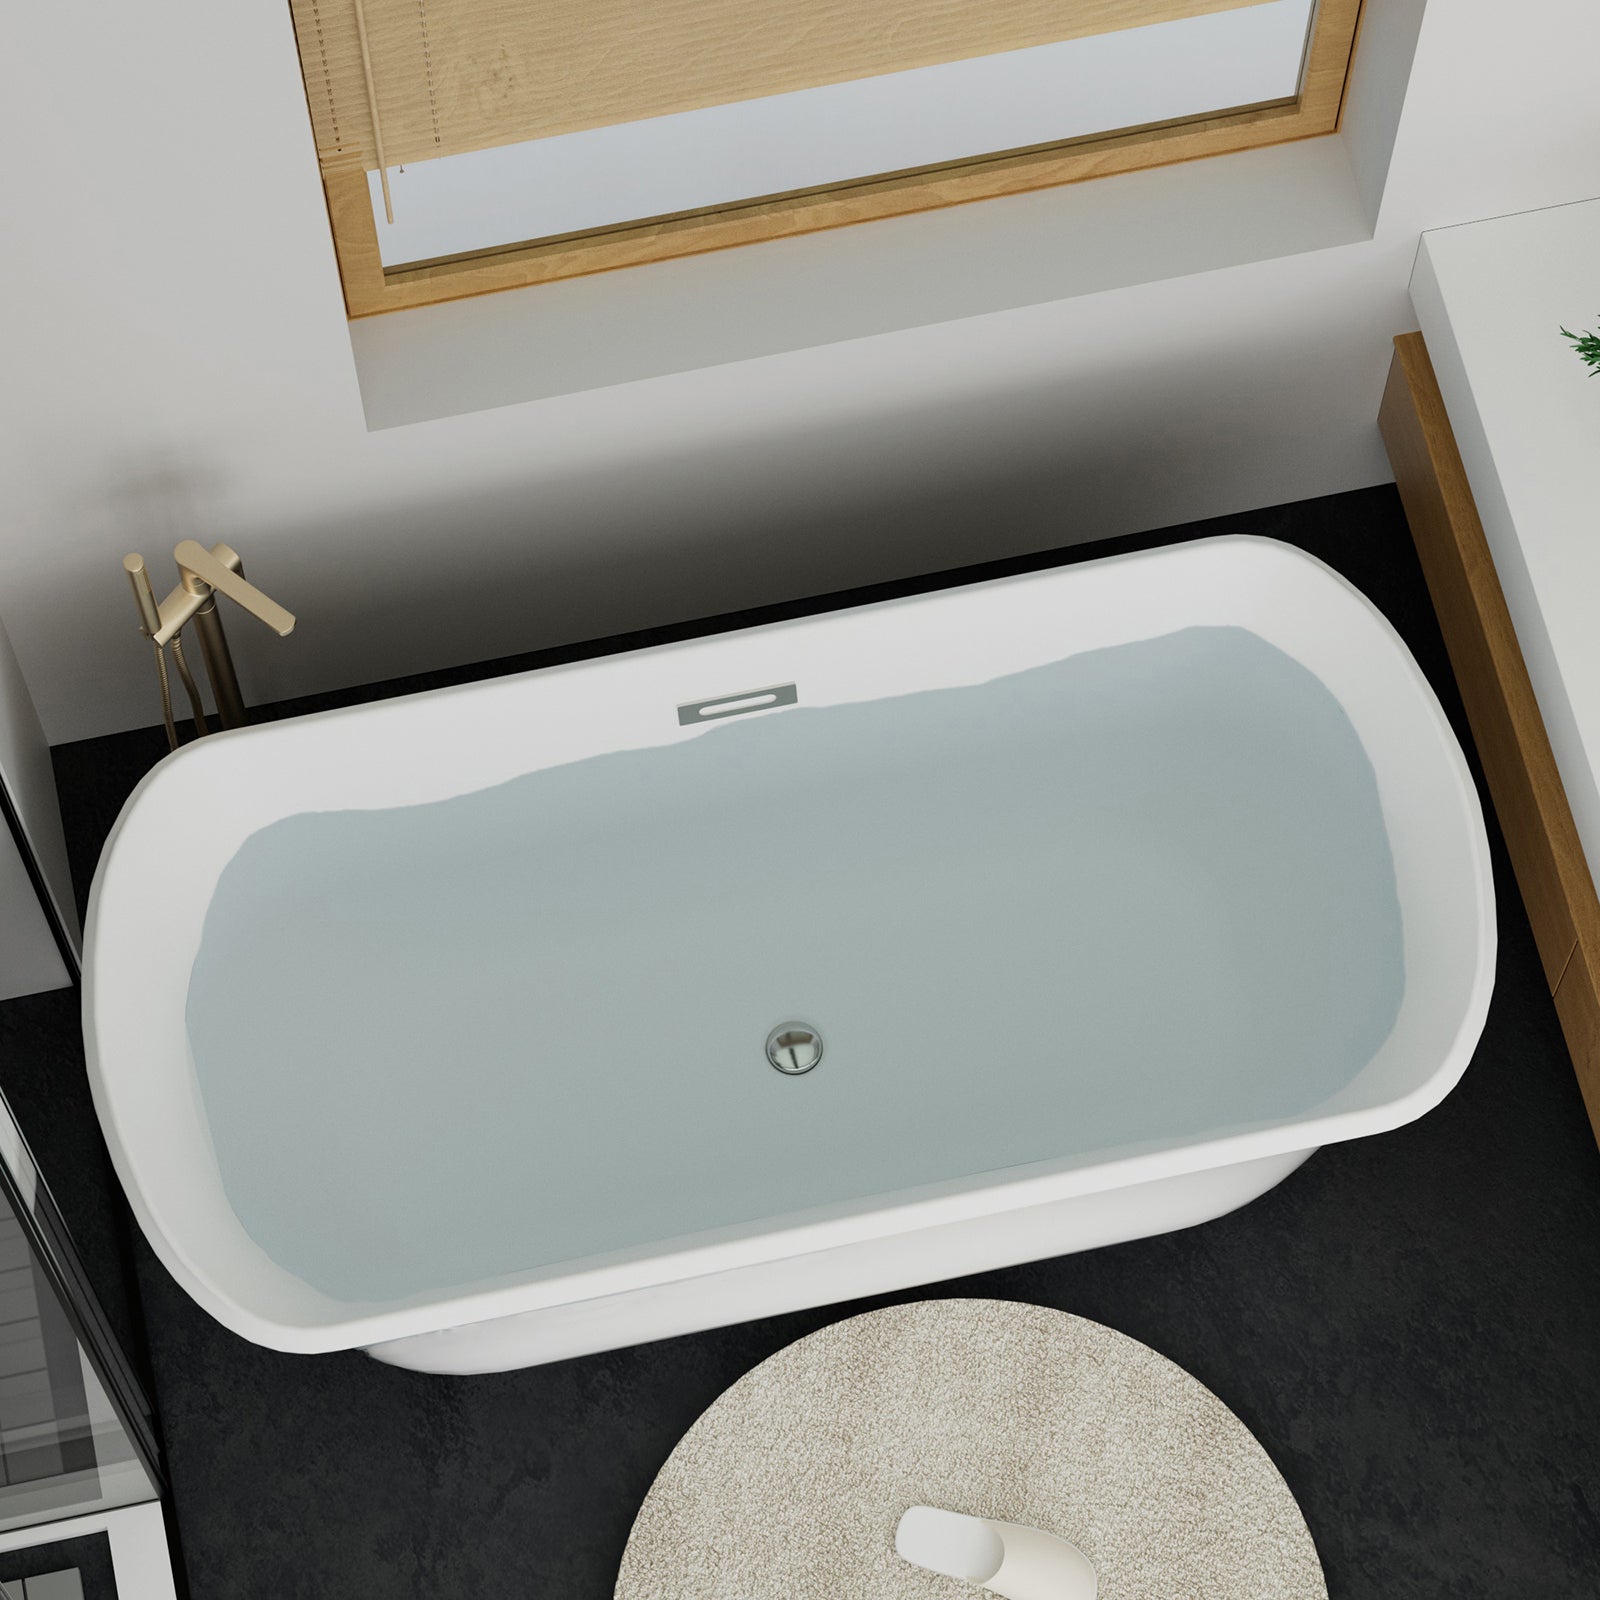 67 inch rectangular pedestal bathtub in white